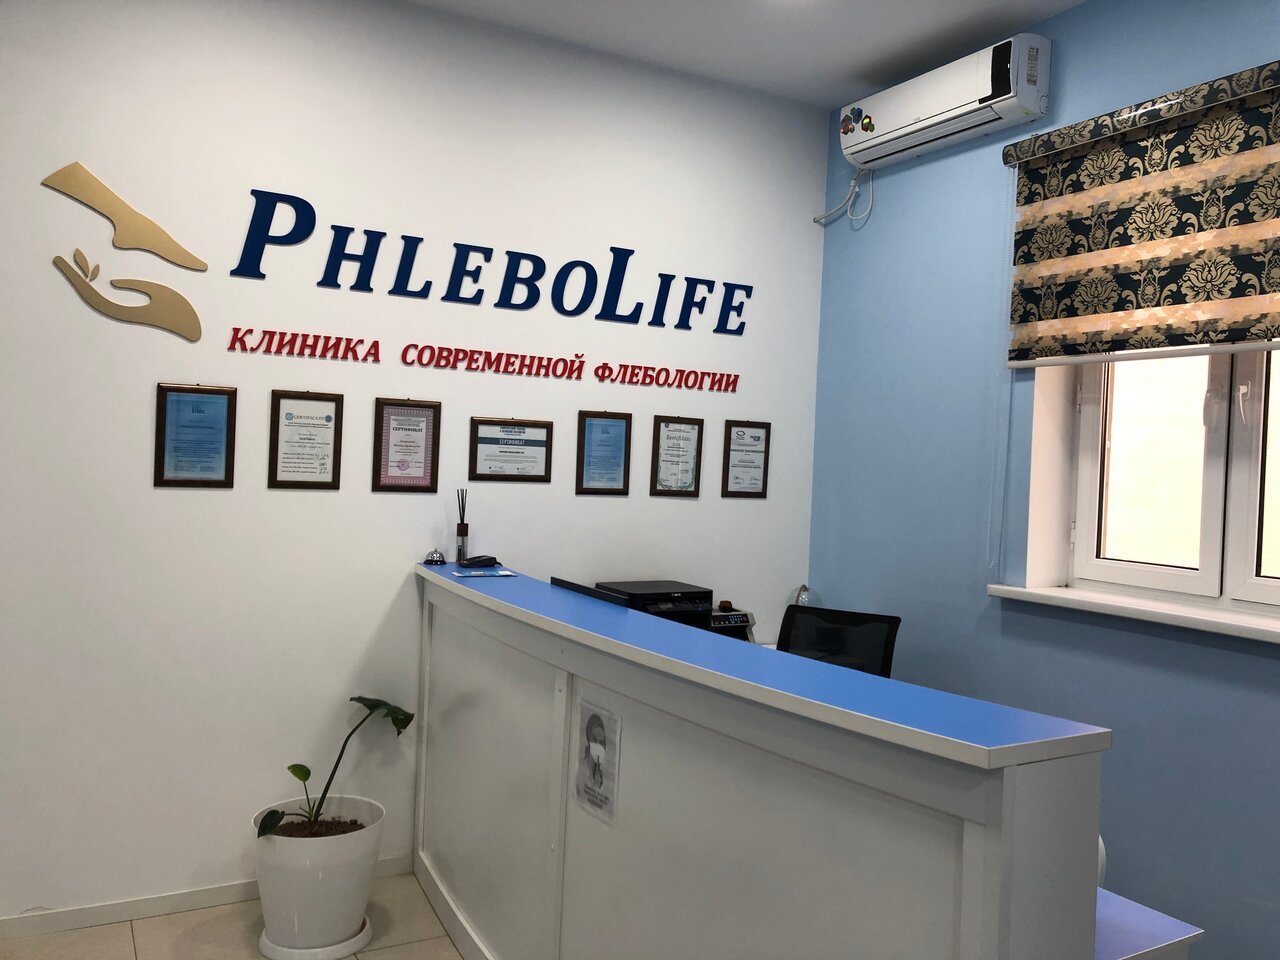 Клиника современной флебологии PHLEBOLIFE в Ташкенте